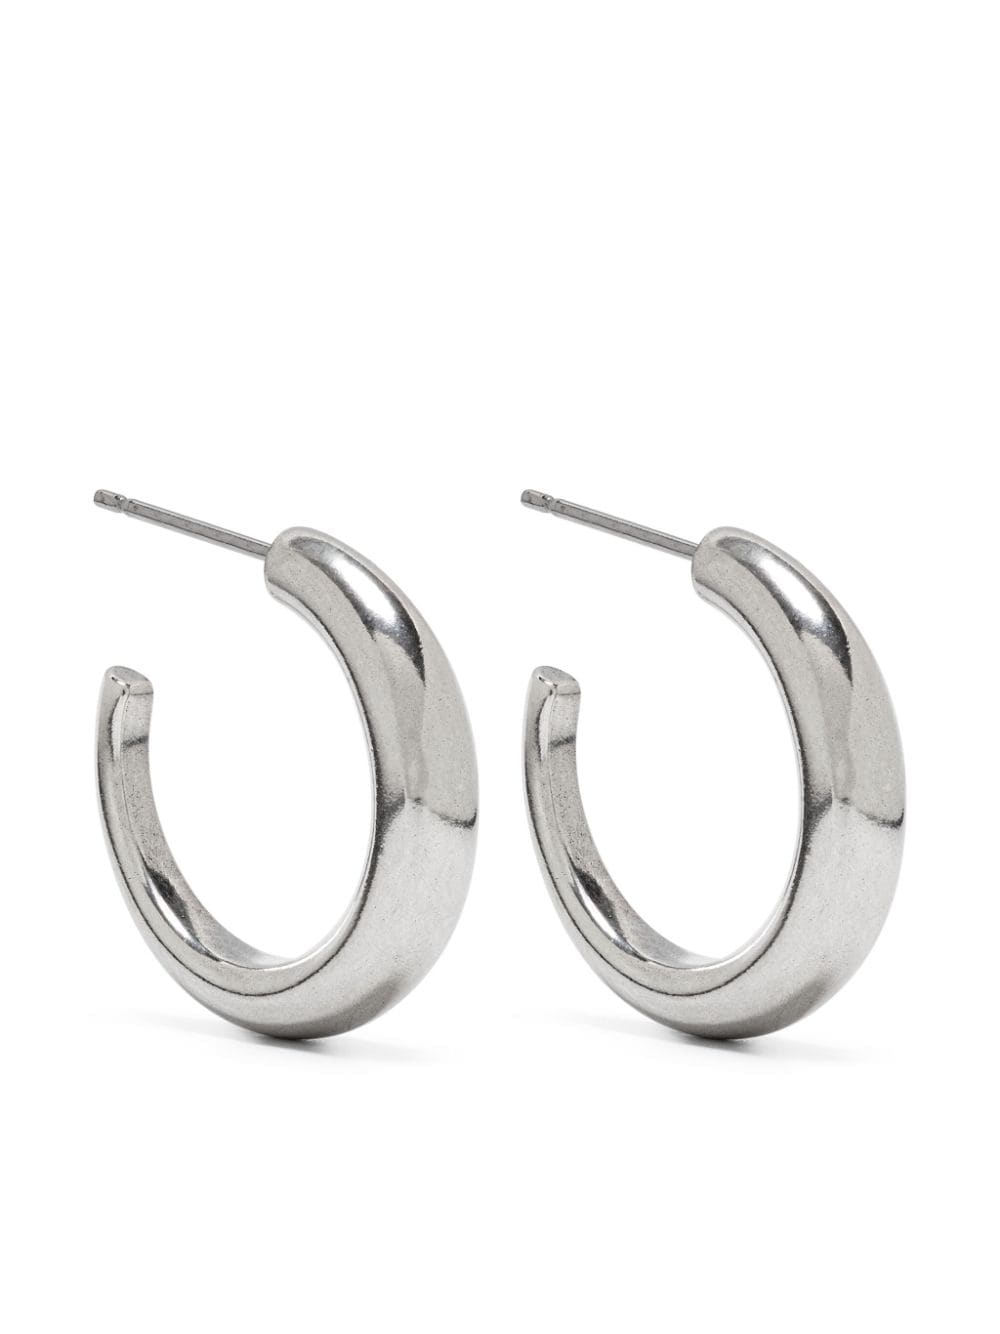 ISABEL MARANT Rings creole hoop earrings - Silver von ISABEL MARANT